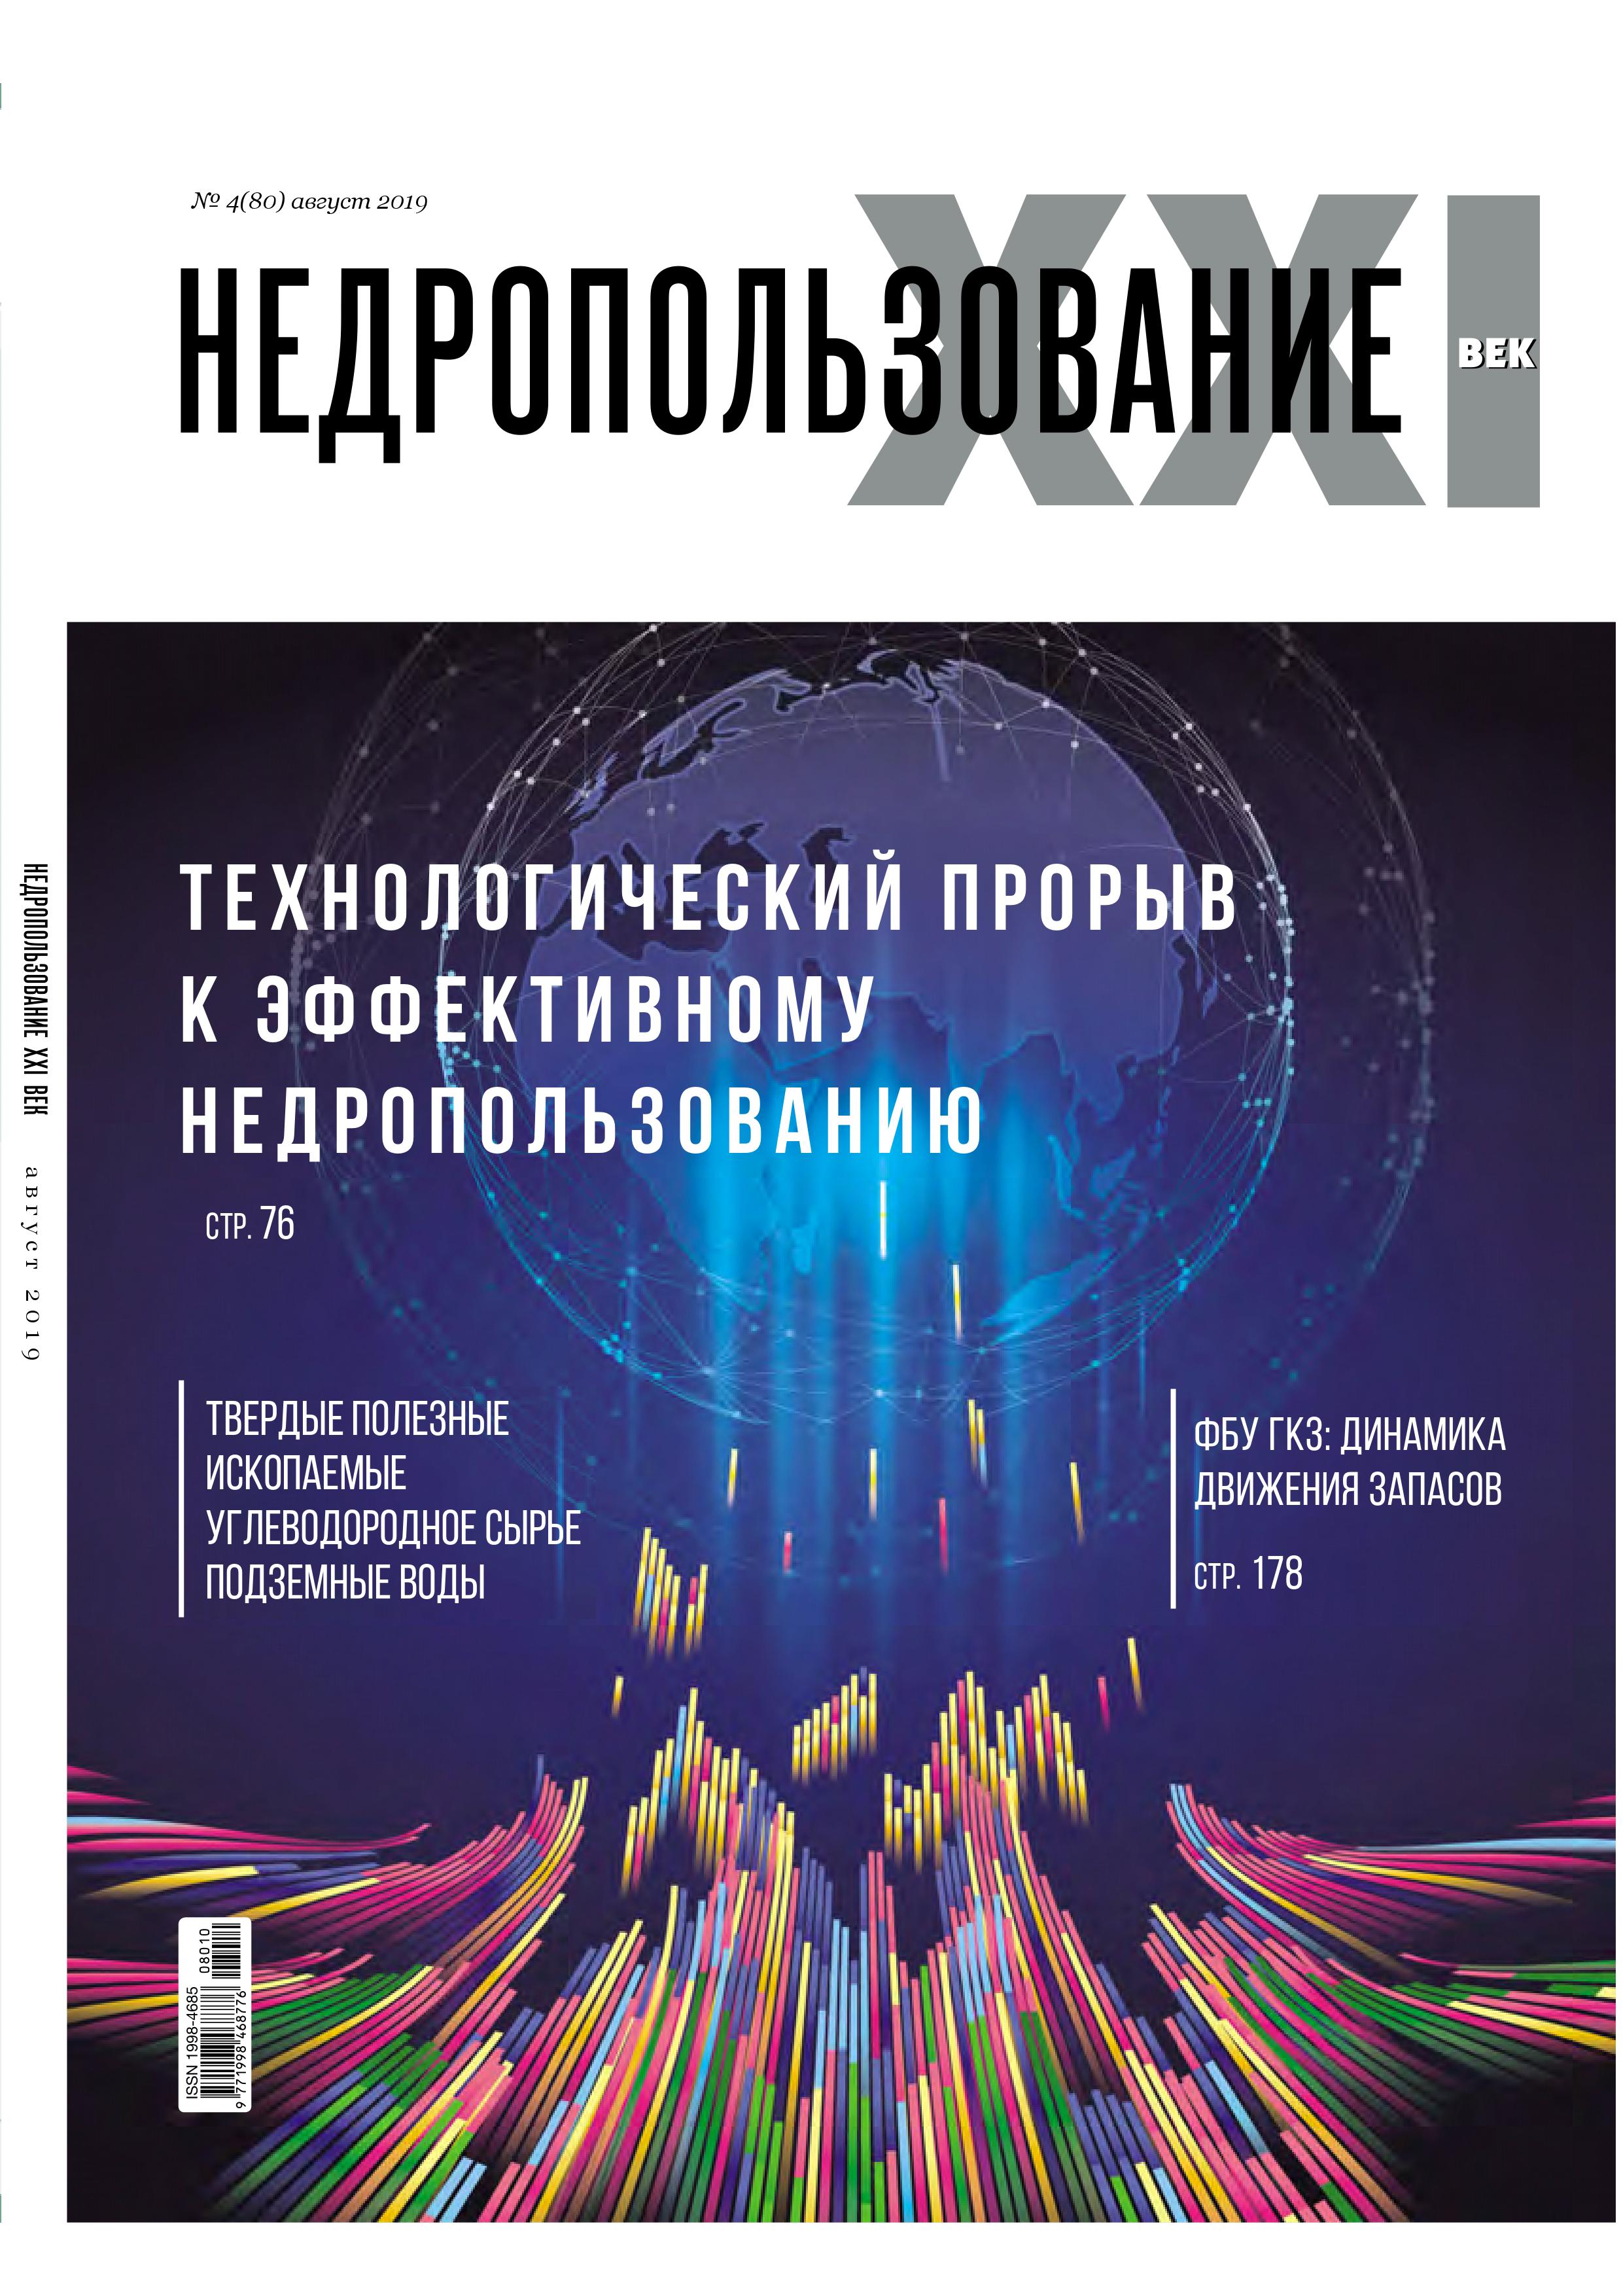 Выход очередного номера журнала "Недропользование XXI век" (№4 - сентябрь 2019 г.)